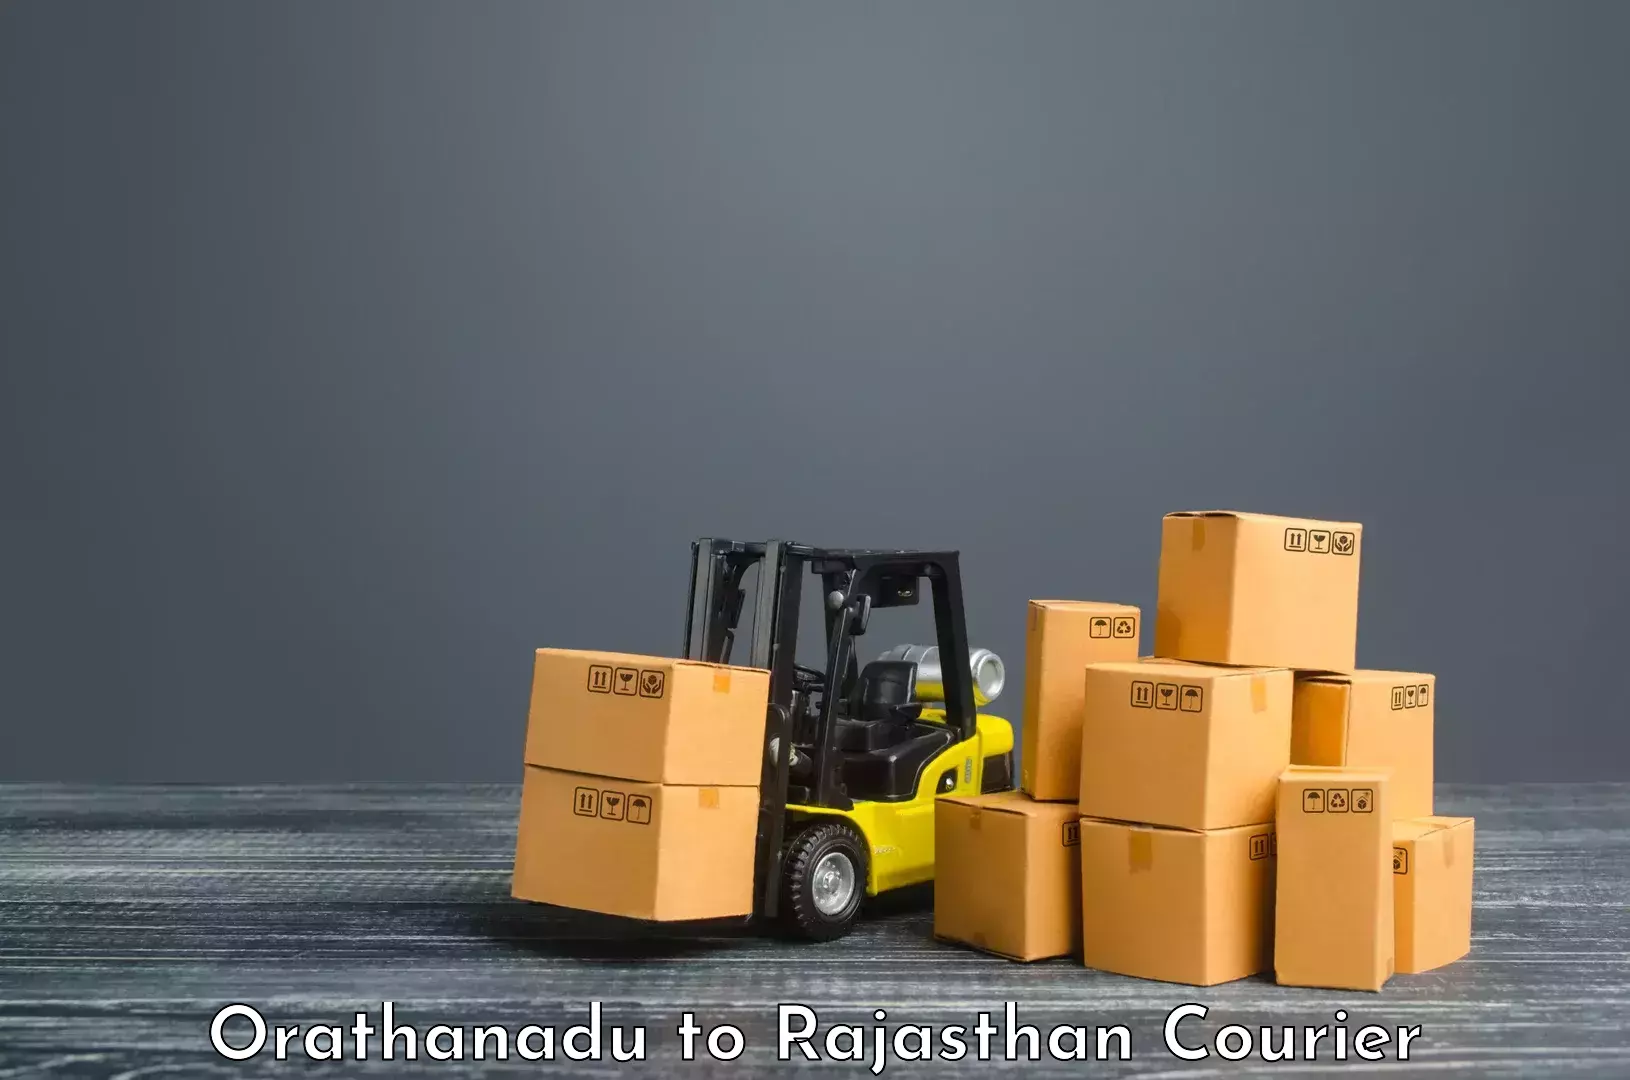 Optimized delivery routes Orathanadu to Kumbhalgarh